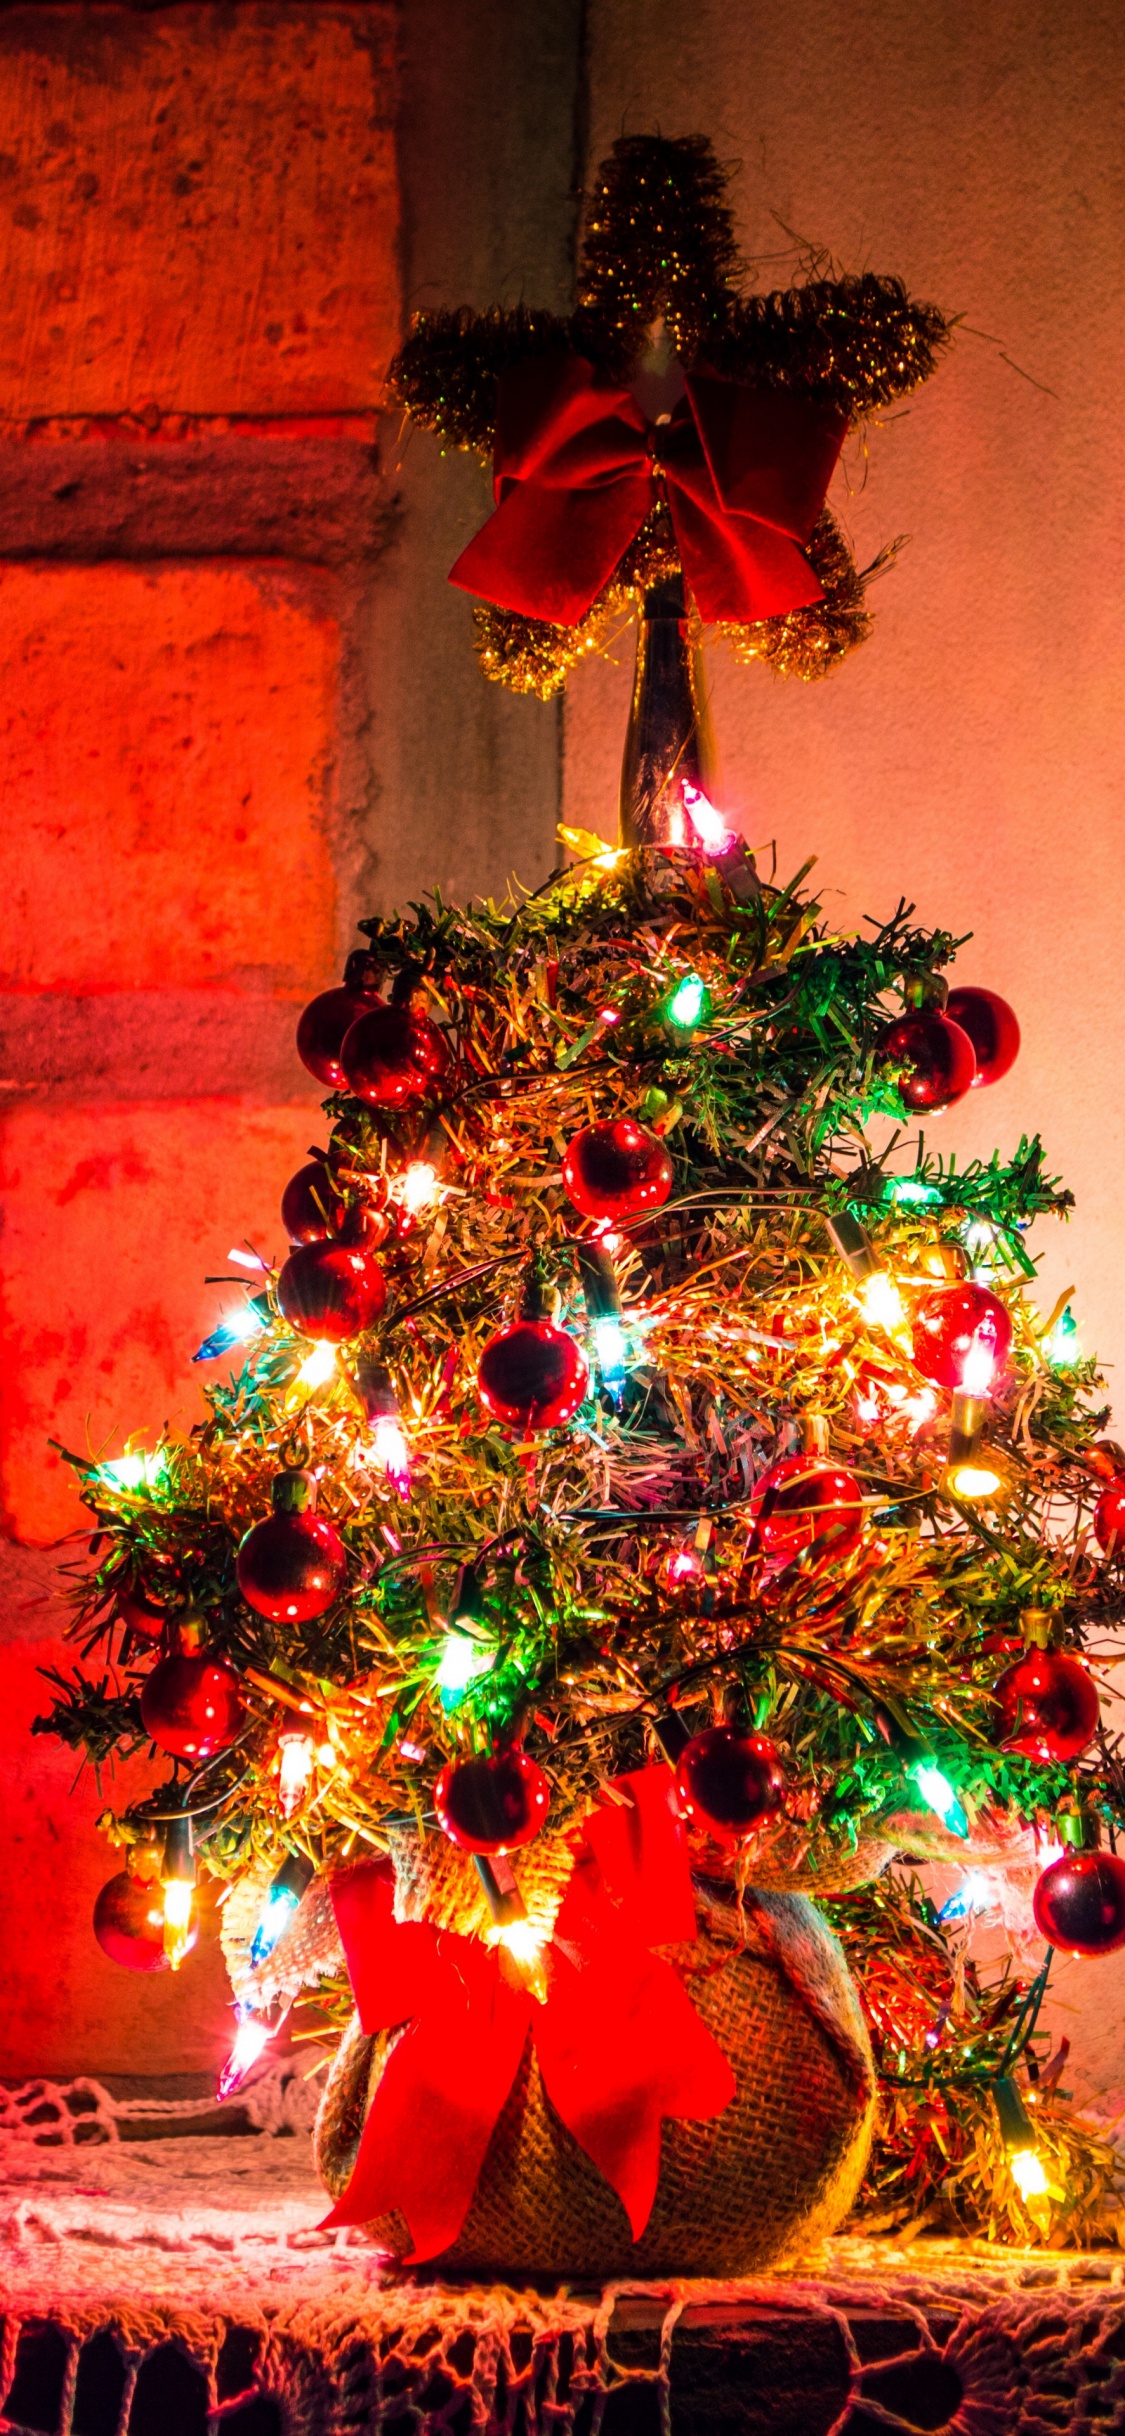 圣诞节那天, 圣诞装饰, 圣诞树, 新的一年, 圣诞节的装饰品 壁纸 1125x2436 允许